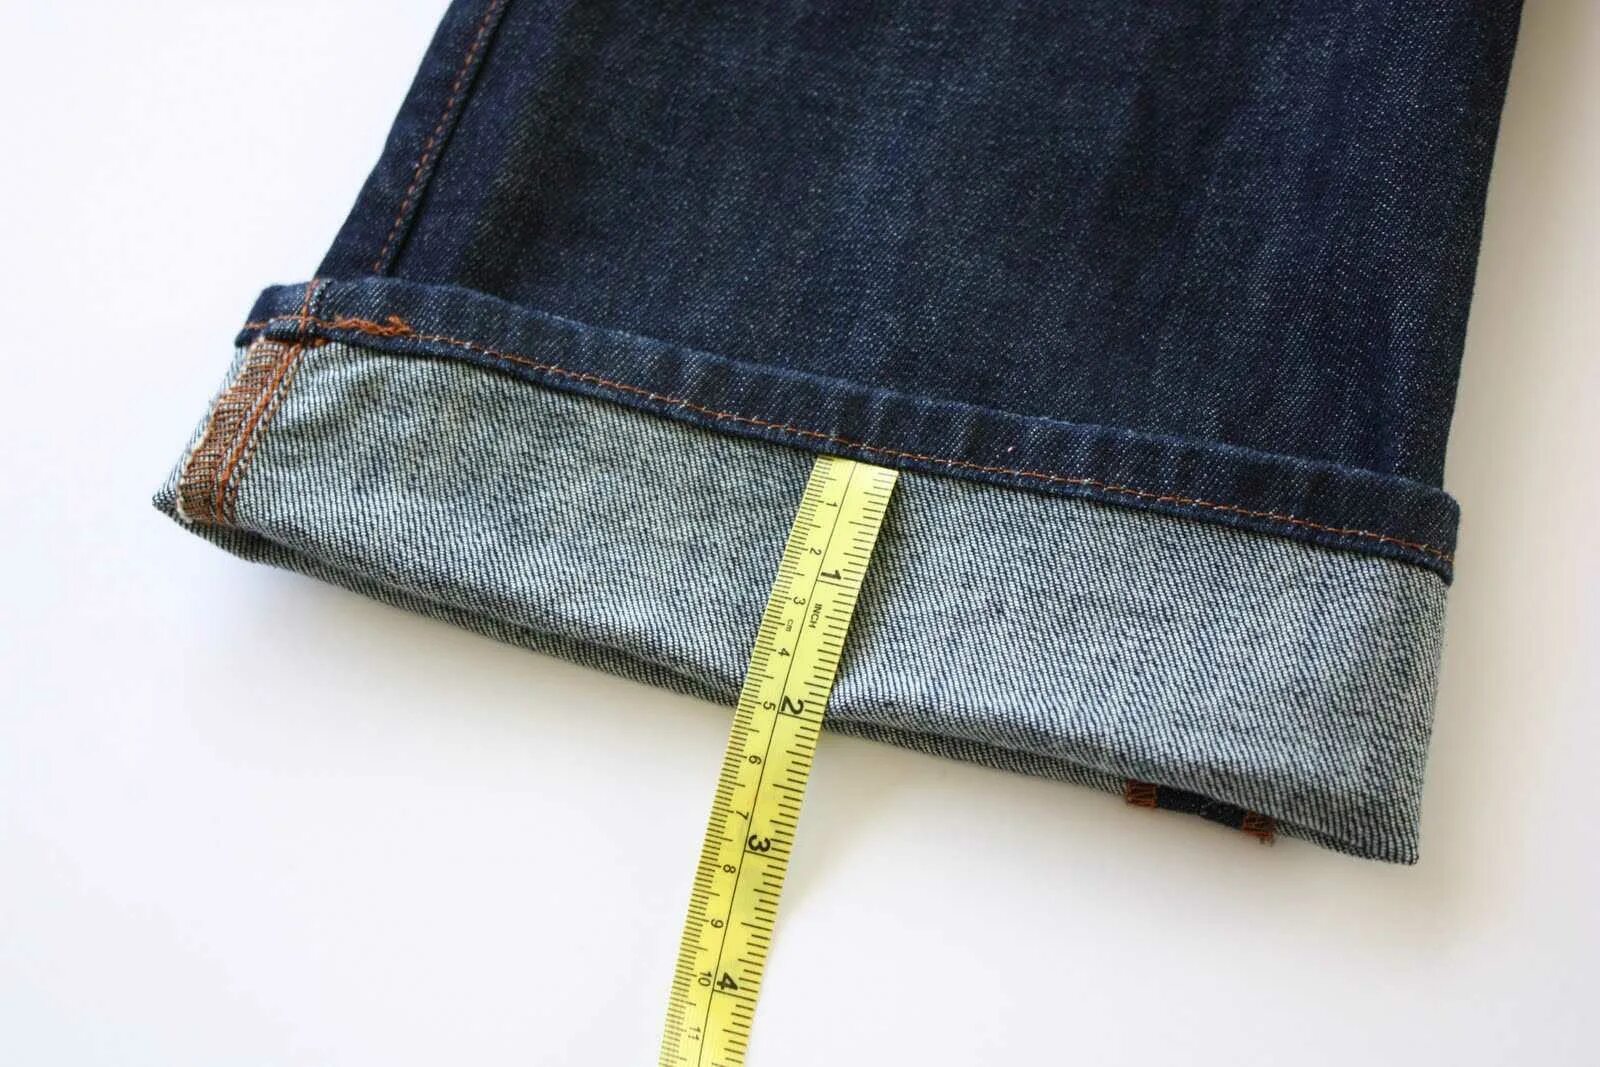 Видео как подшить джинсы с сохранением фабричного. Подрубить джинсы. Укорачивание джинсов. Подшить джинсы. Подгиб джинсов.